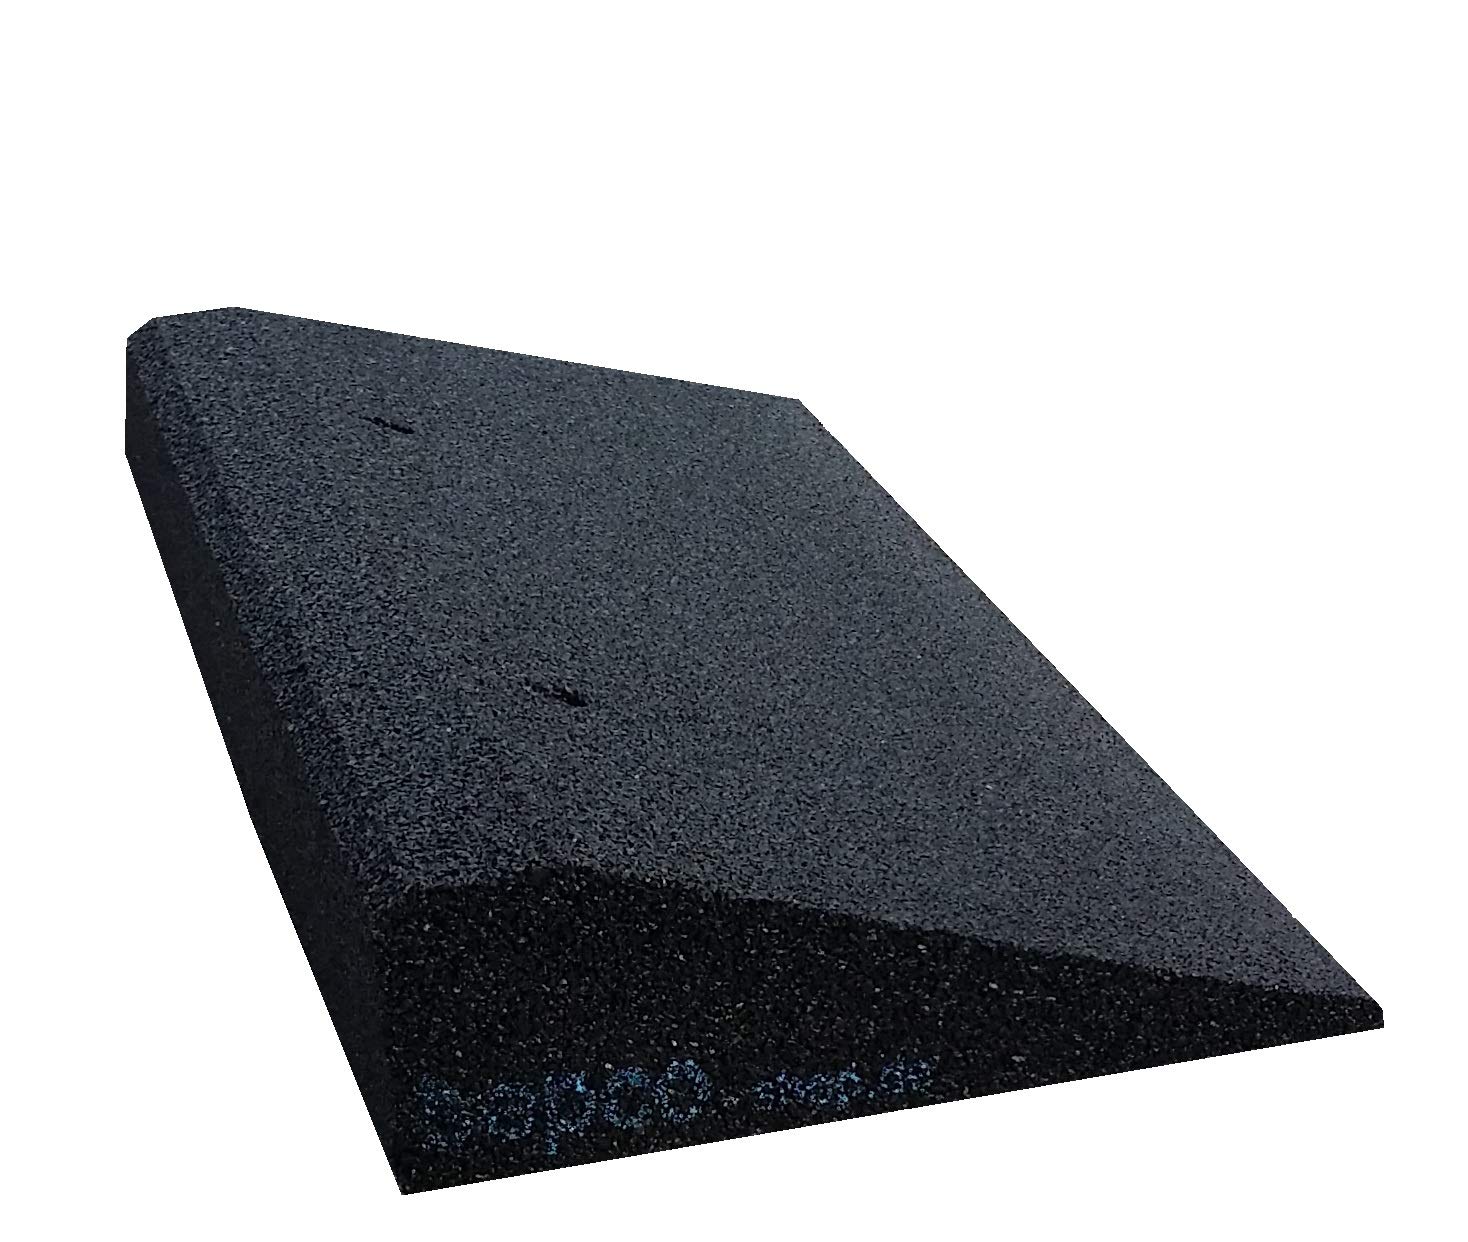 bepco Bordsteinkanten-Rampe, LxBxH: 50 x 25 x 5 cm aus Gummi (schwarz) Auffahrrampe,Türschwellenrampe, mit eingelagerten Unterlegscheiben zur Befestigung